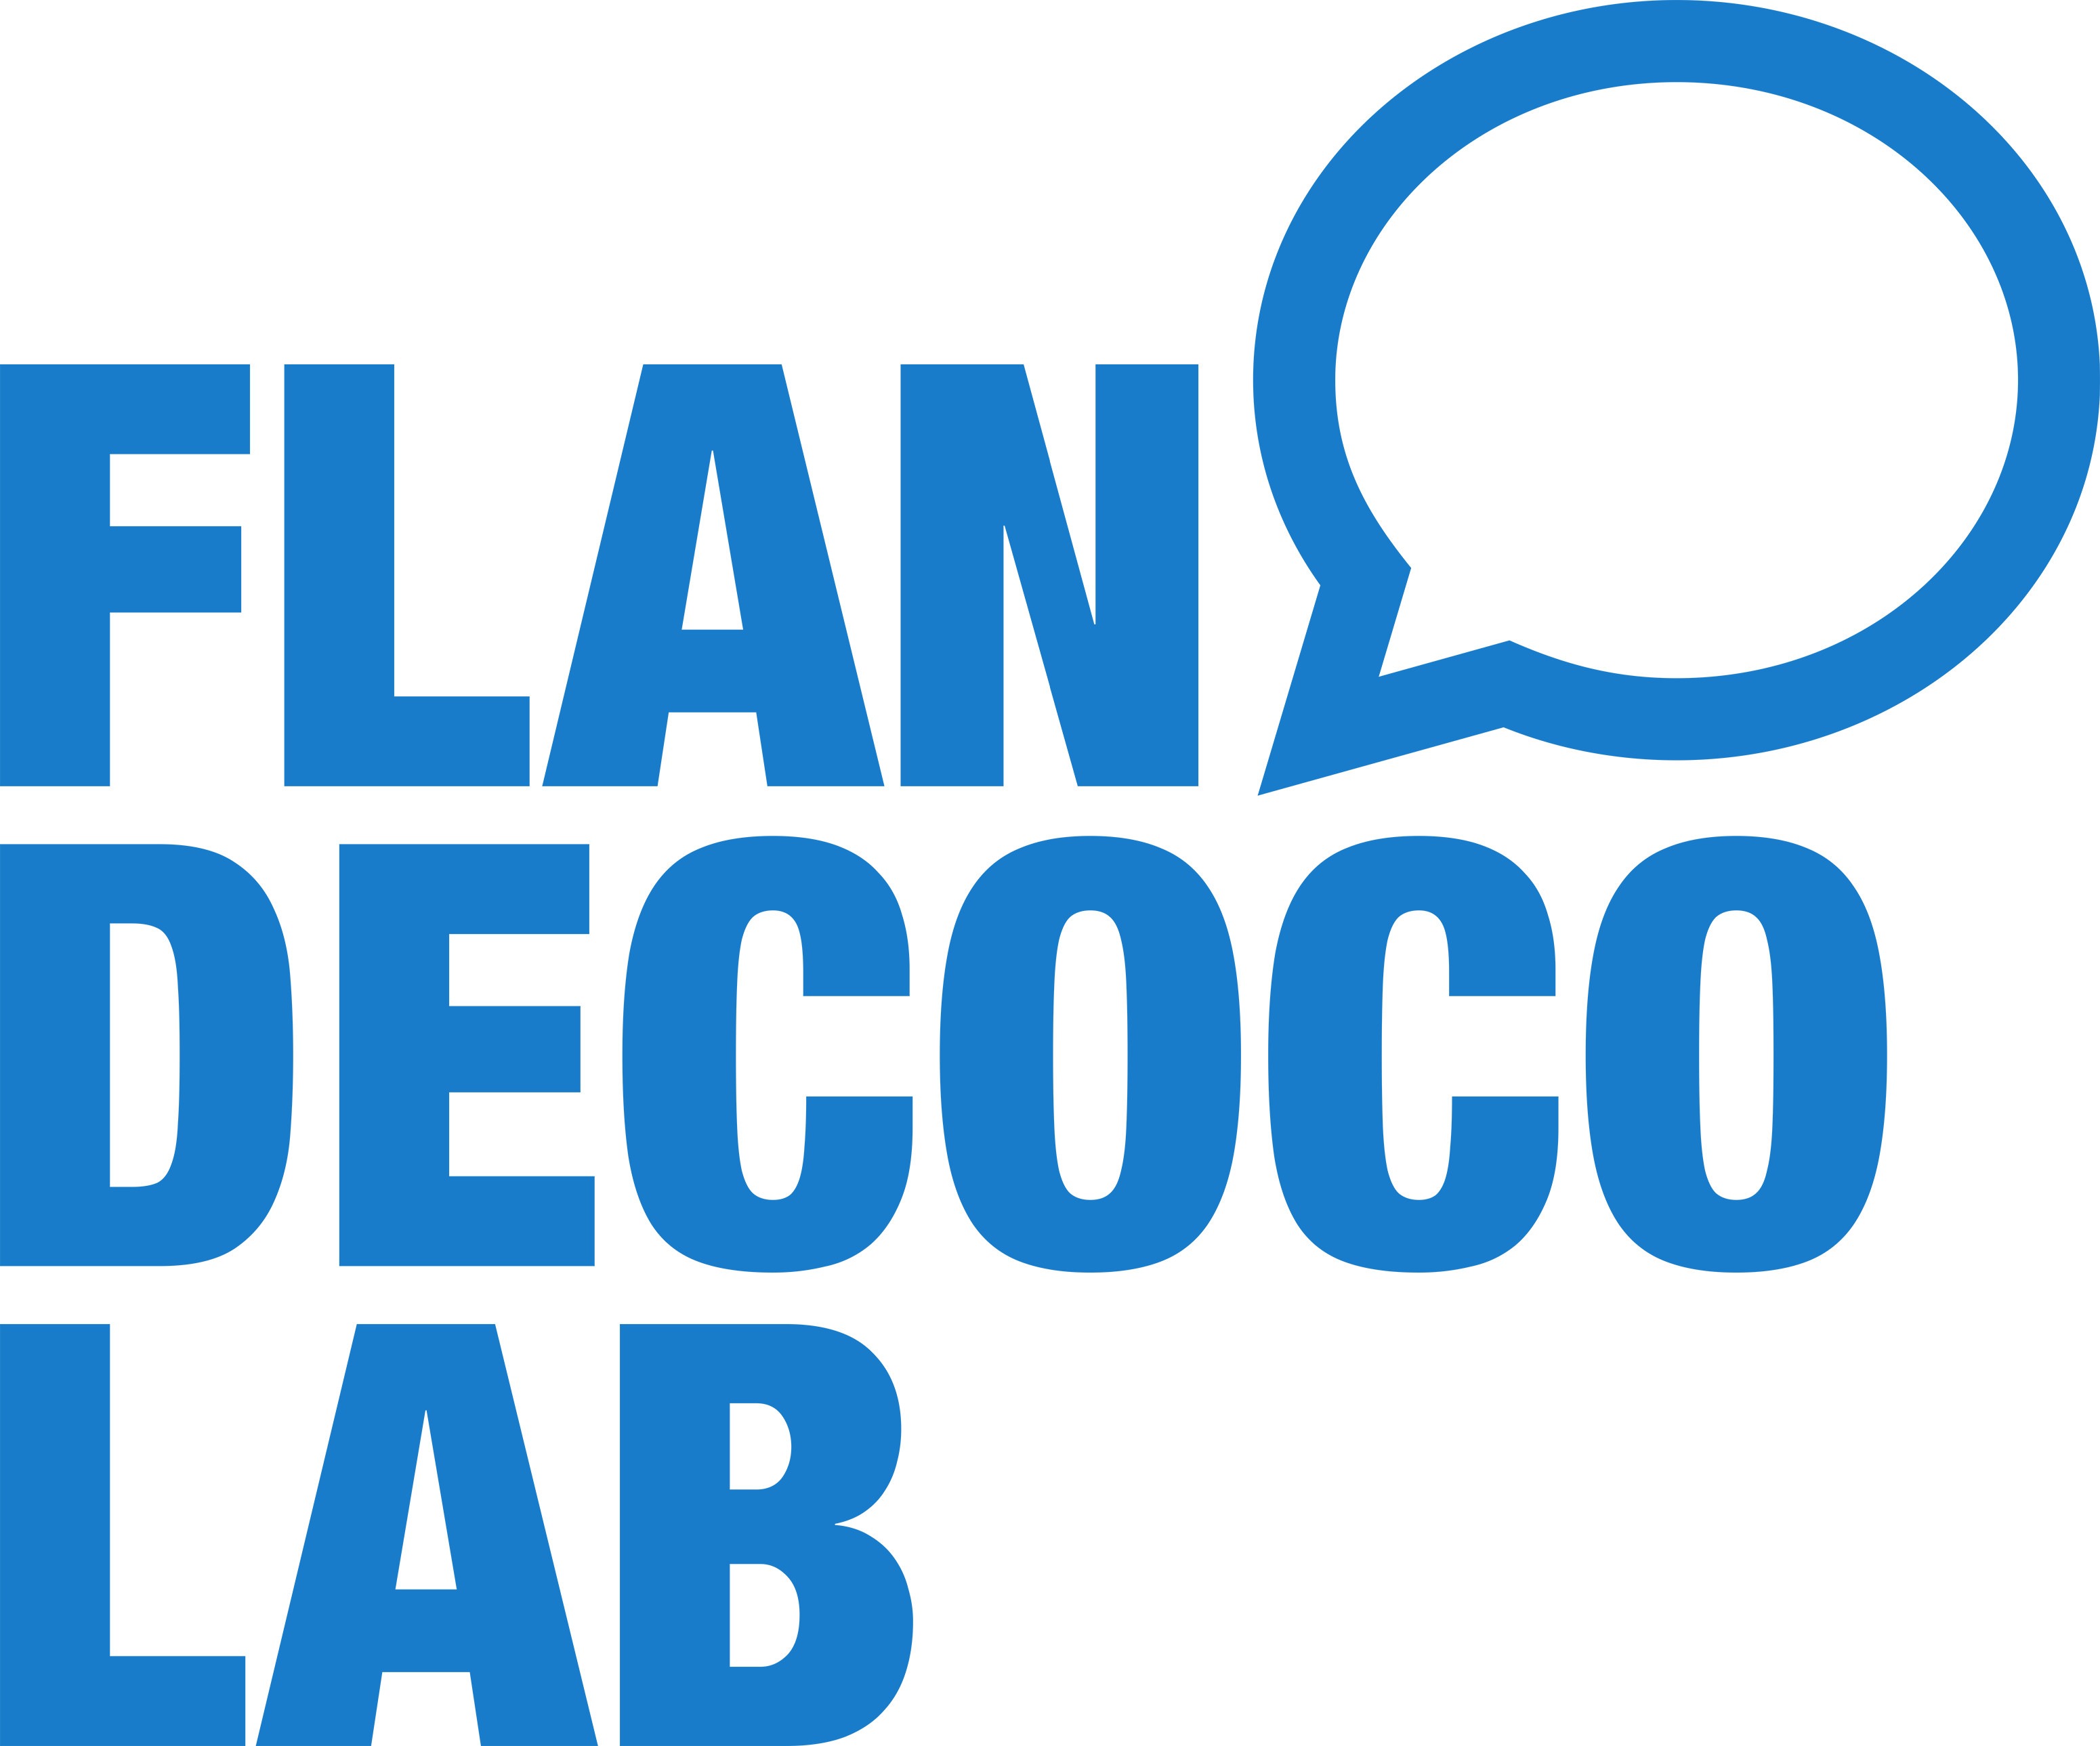 Agencia FlandecocoLab